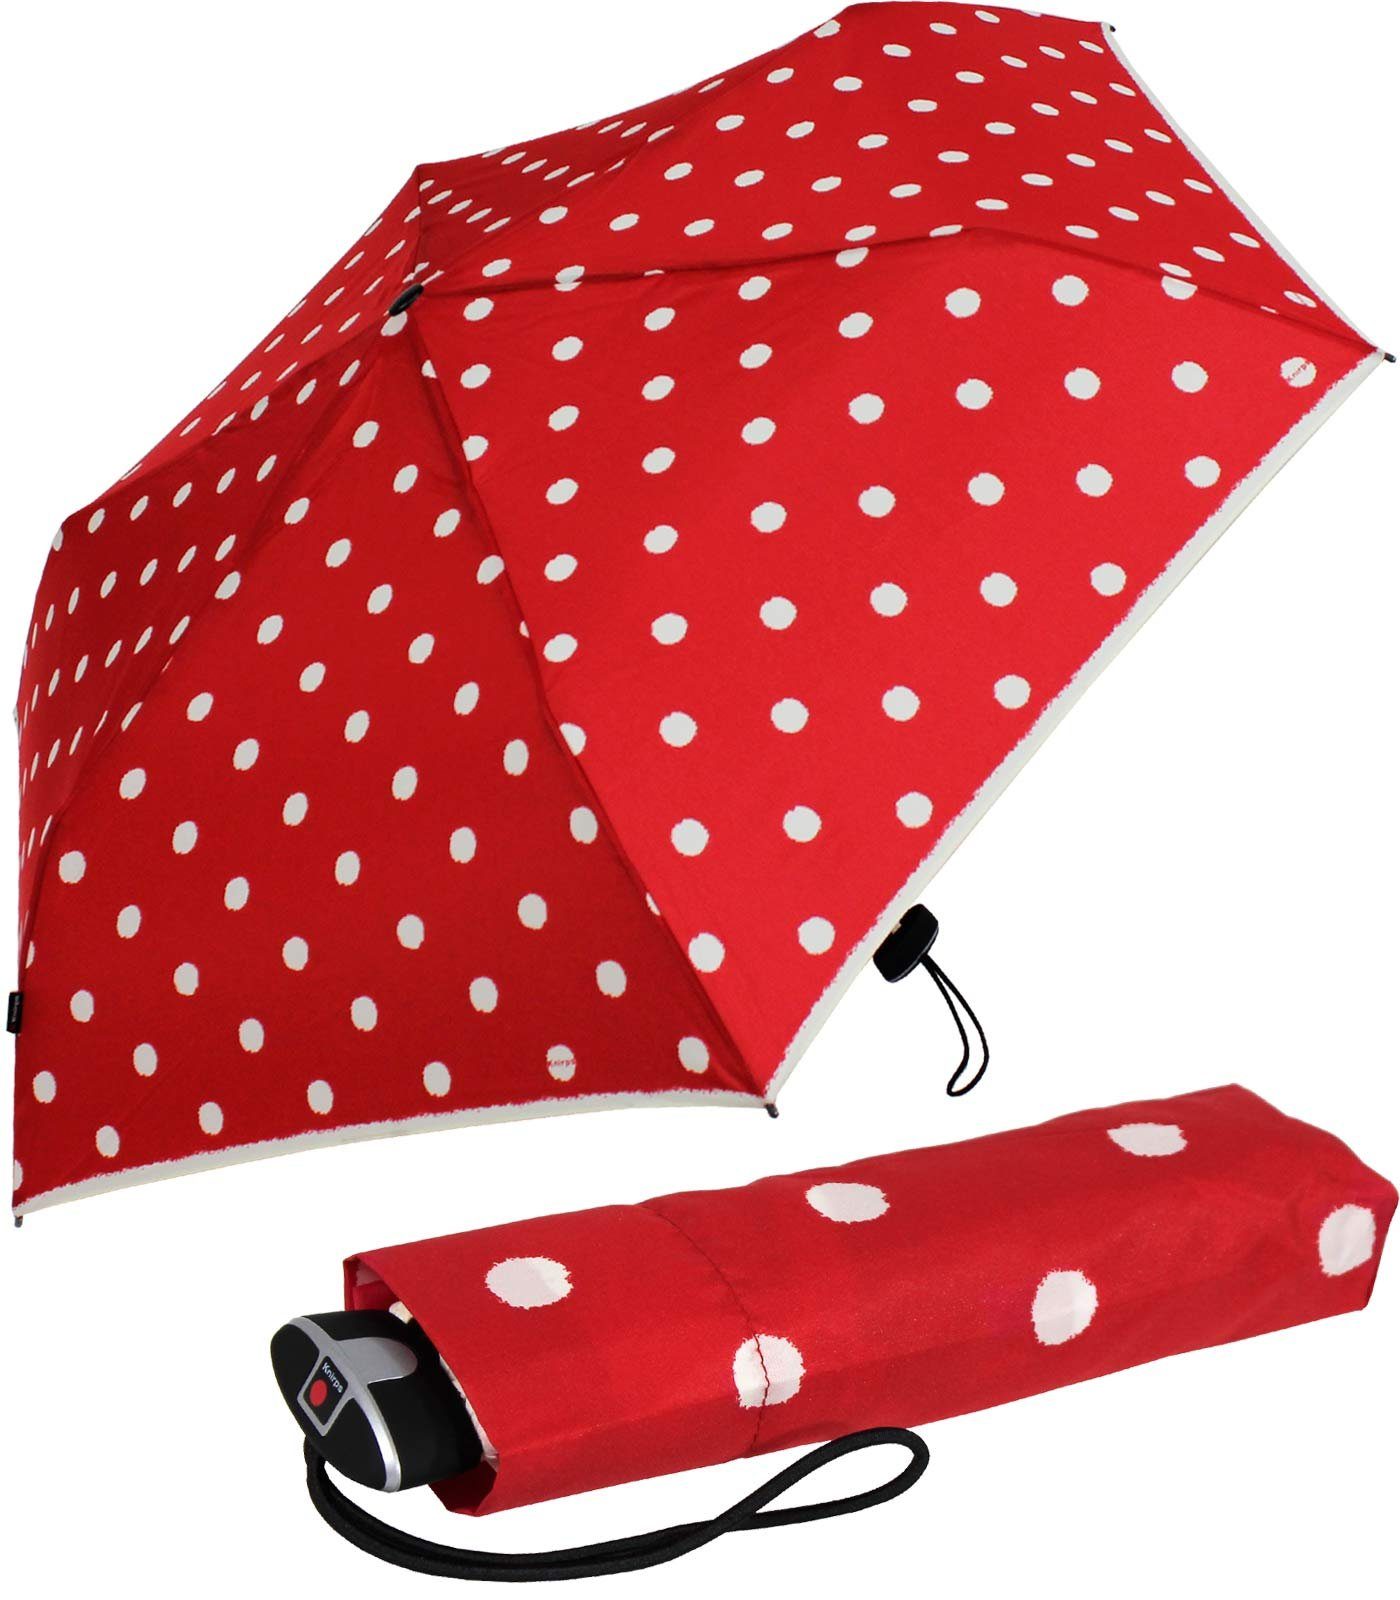 passend für für ein Begleiter, Schirm, jeden Notfall jede treuer stabiler Tasche, Taschenregenschirm flacher, Knirps®